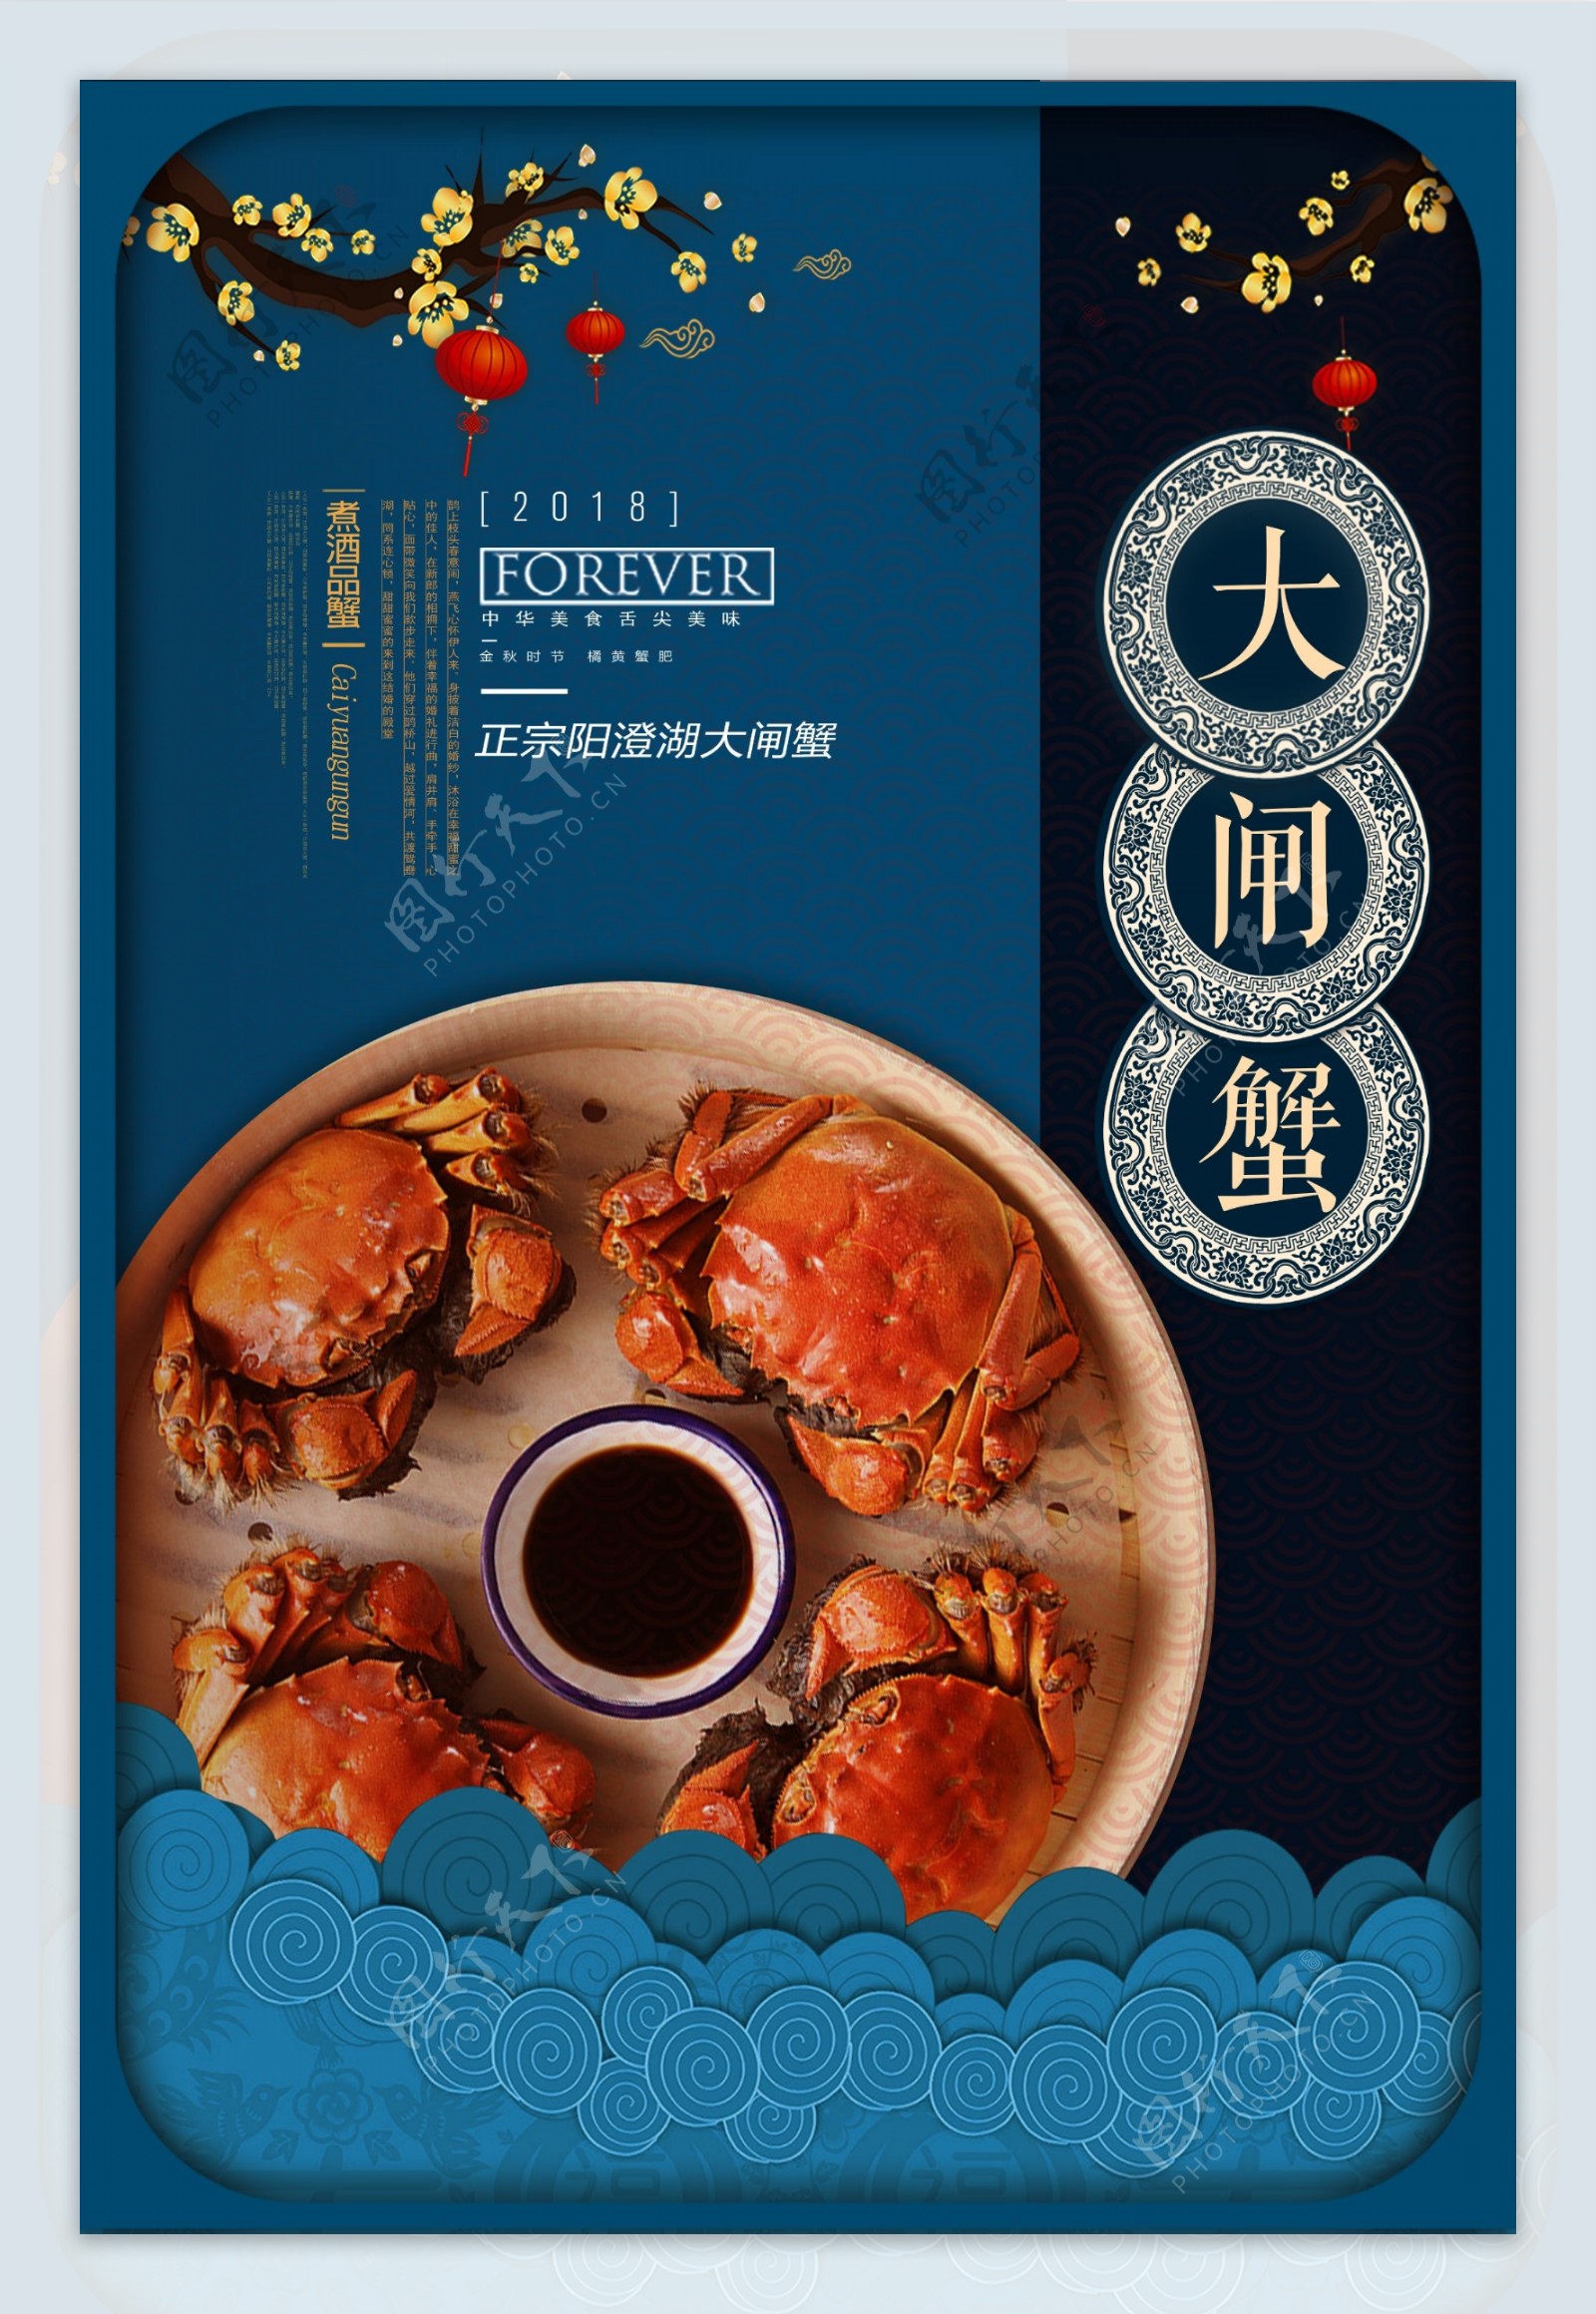 立体中国古典风格大闸蟹餐饮美食海报